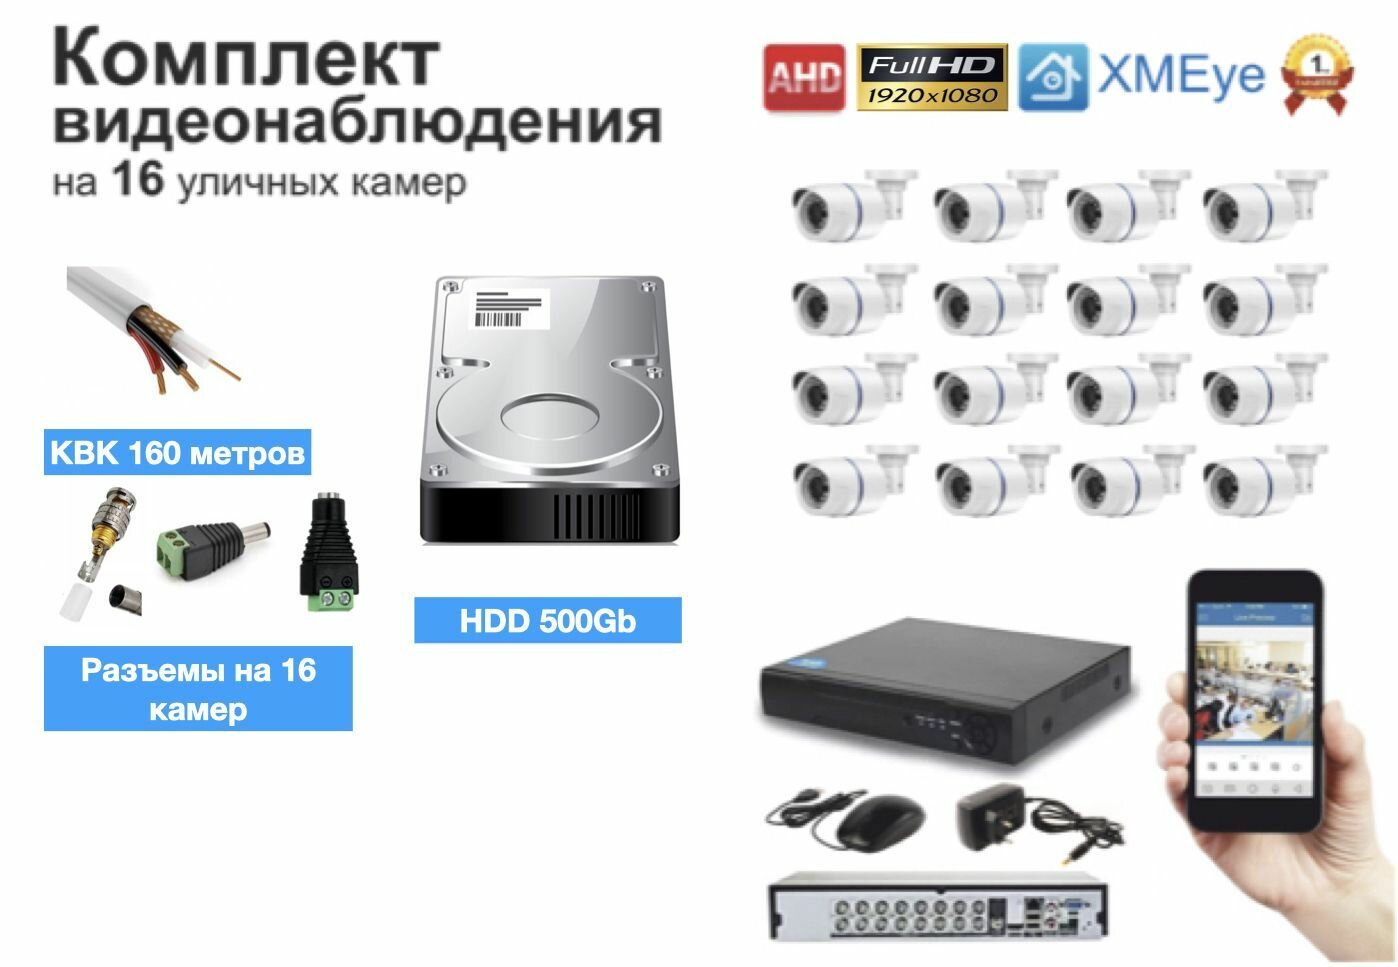 Полный готовый комплект видеонаблюдения на 16 камер (KIT16AHD100W5MP_KVK)